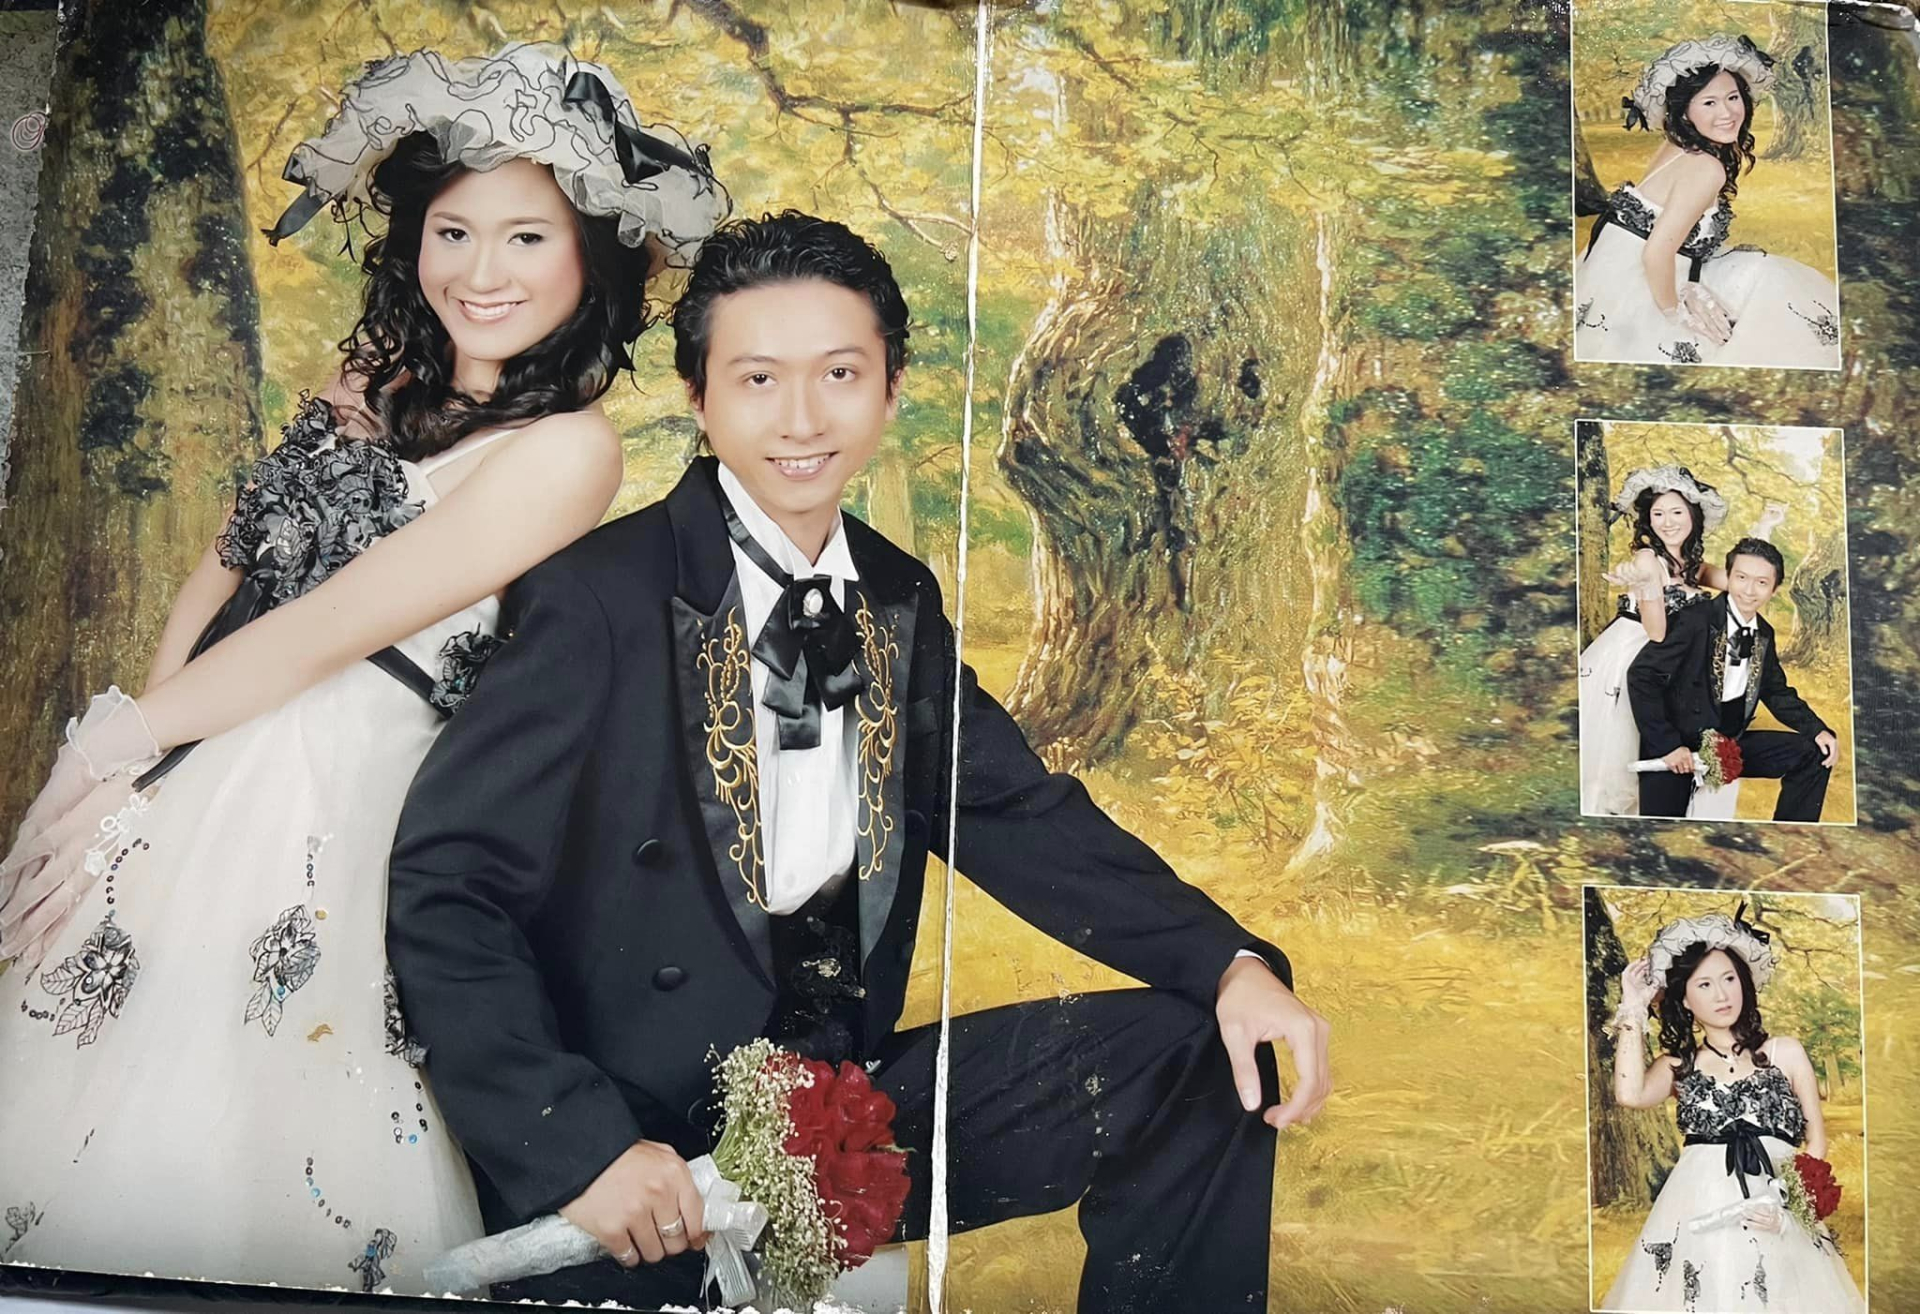 Hứa Minh Đạt tung ảnh cưới với Lâm Vỹ Dạ nhân ngày lễ Tình yêu, CĐM cười ngất với những concept khó đỡ - ảnh 1